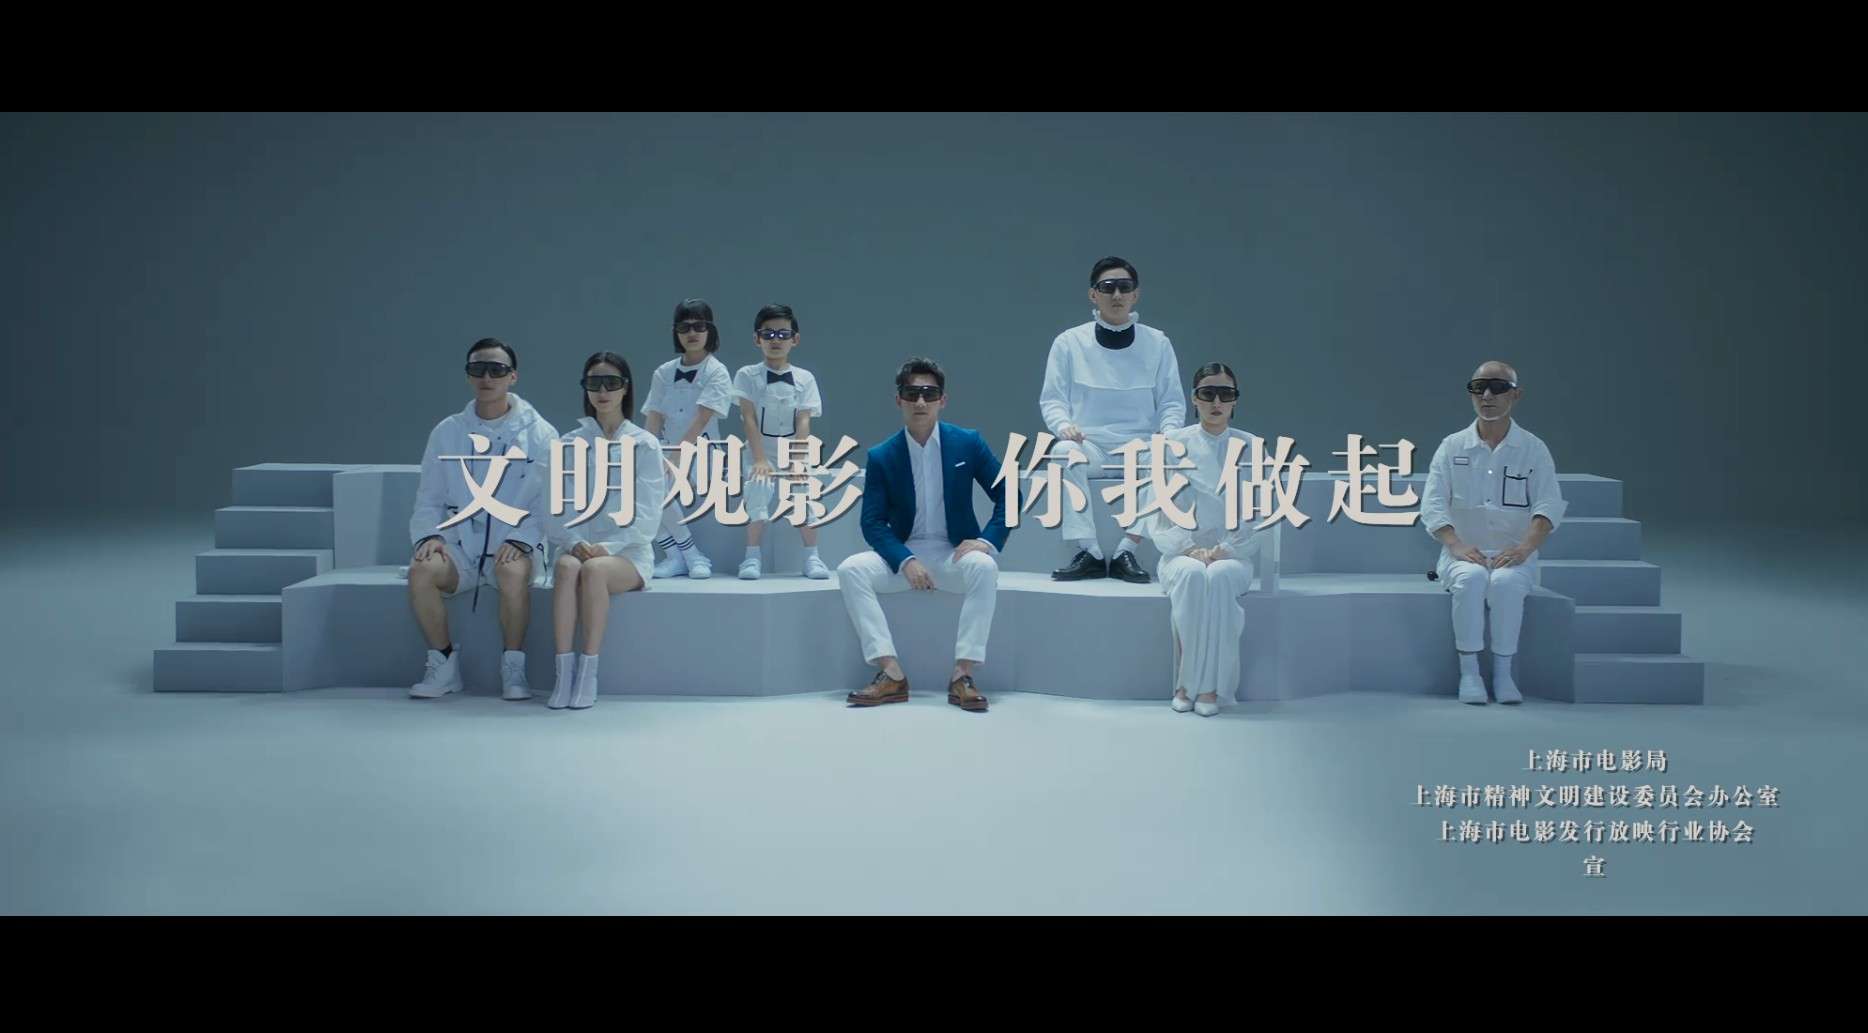 上海市电影局“文明观影、你我做起”公益宣传片#郑恺宣传大使#